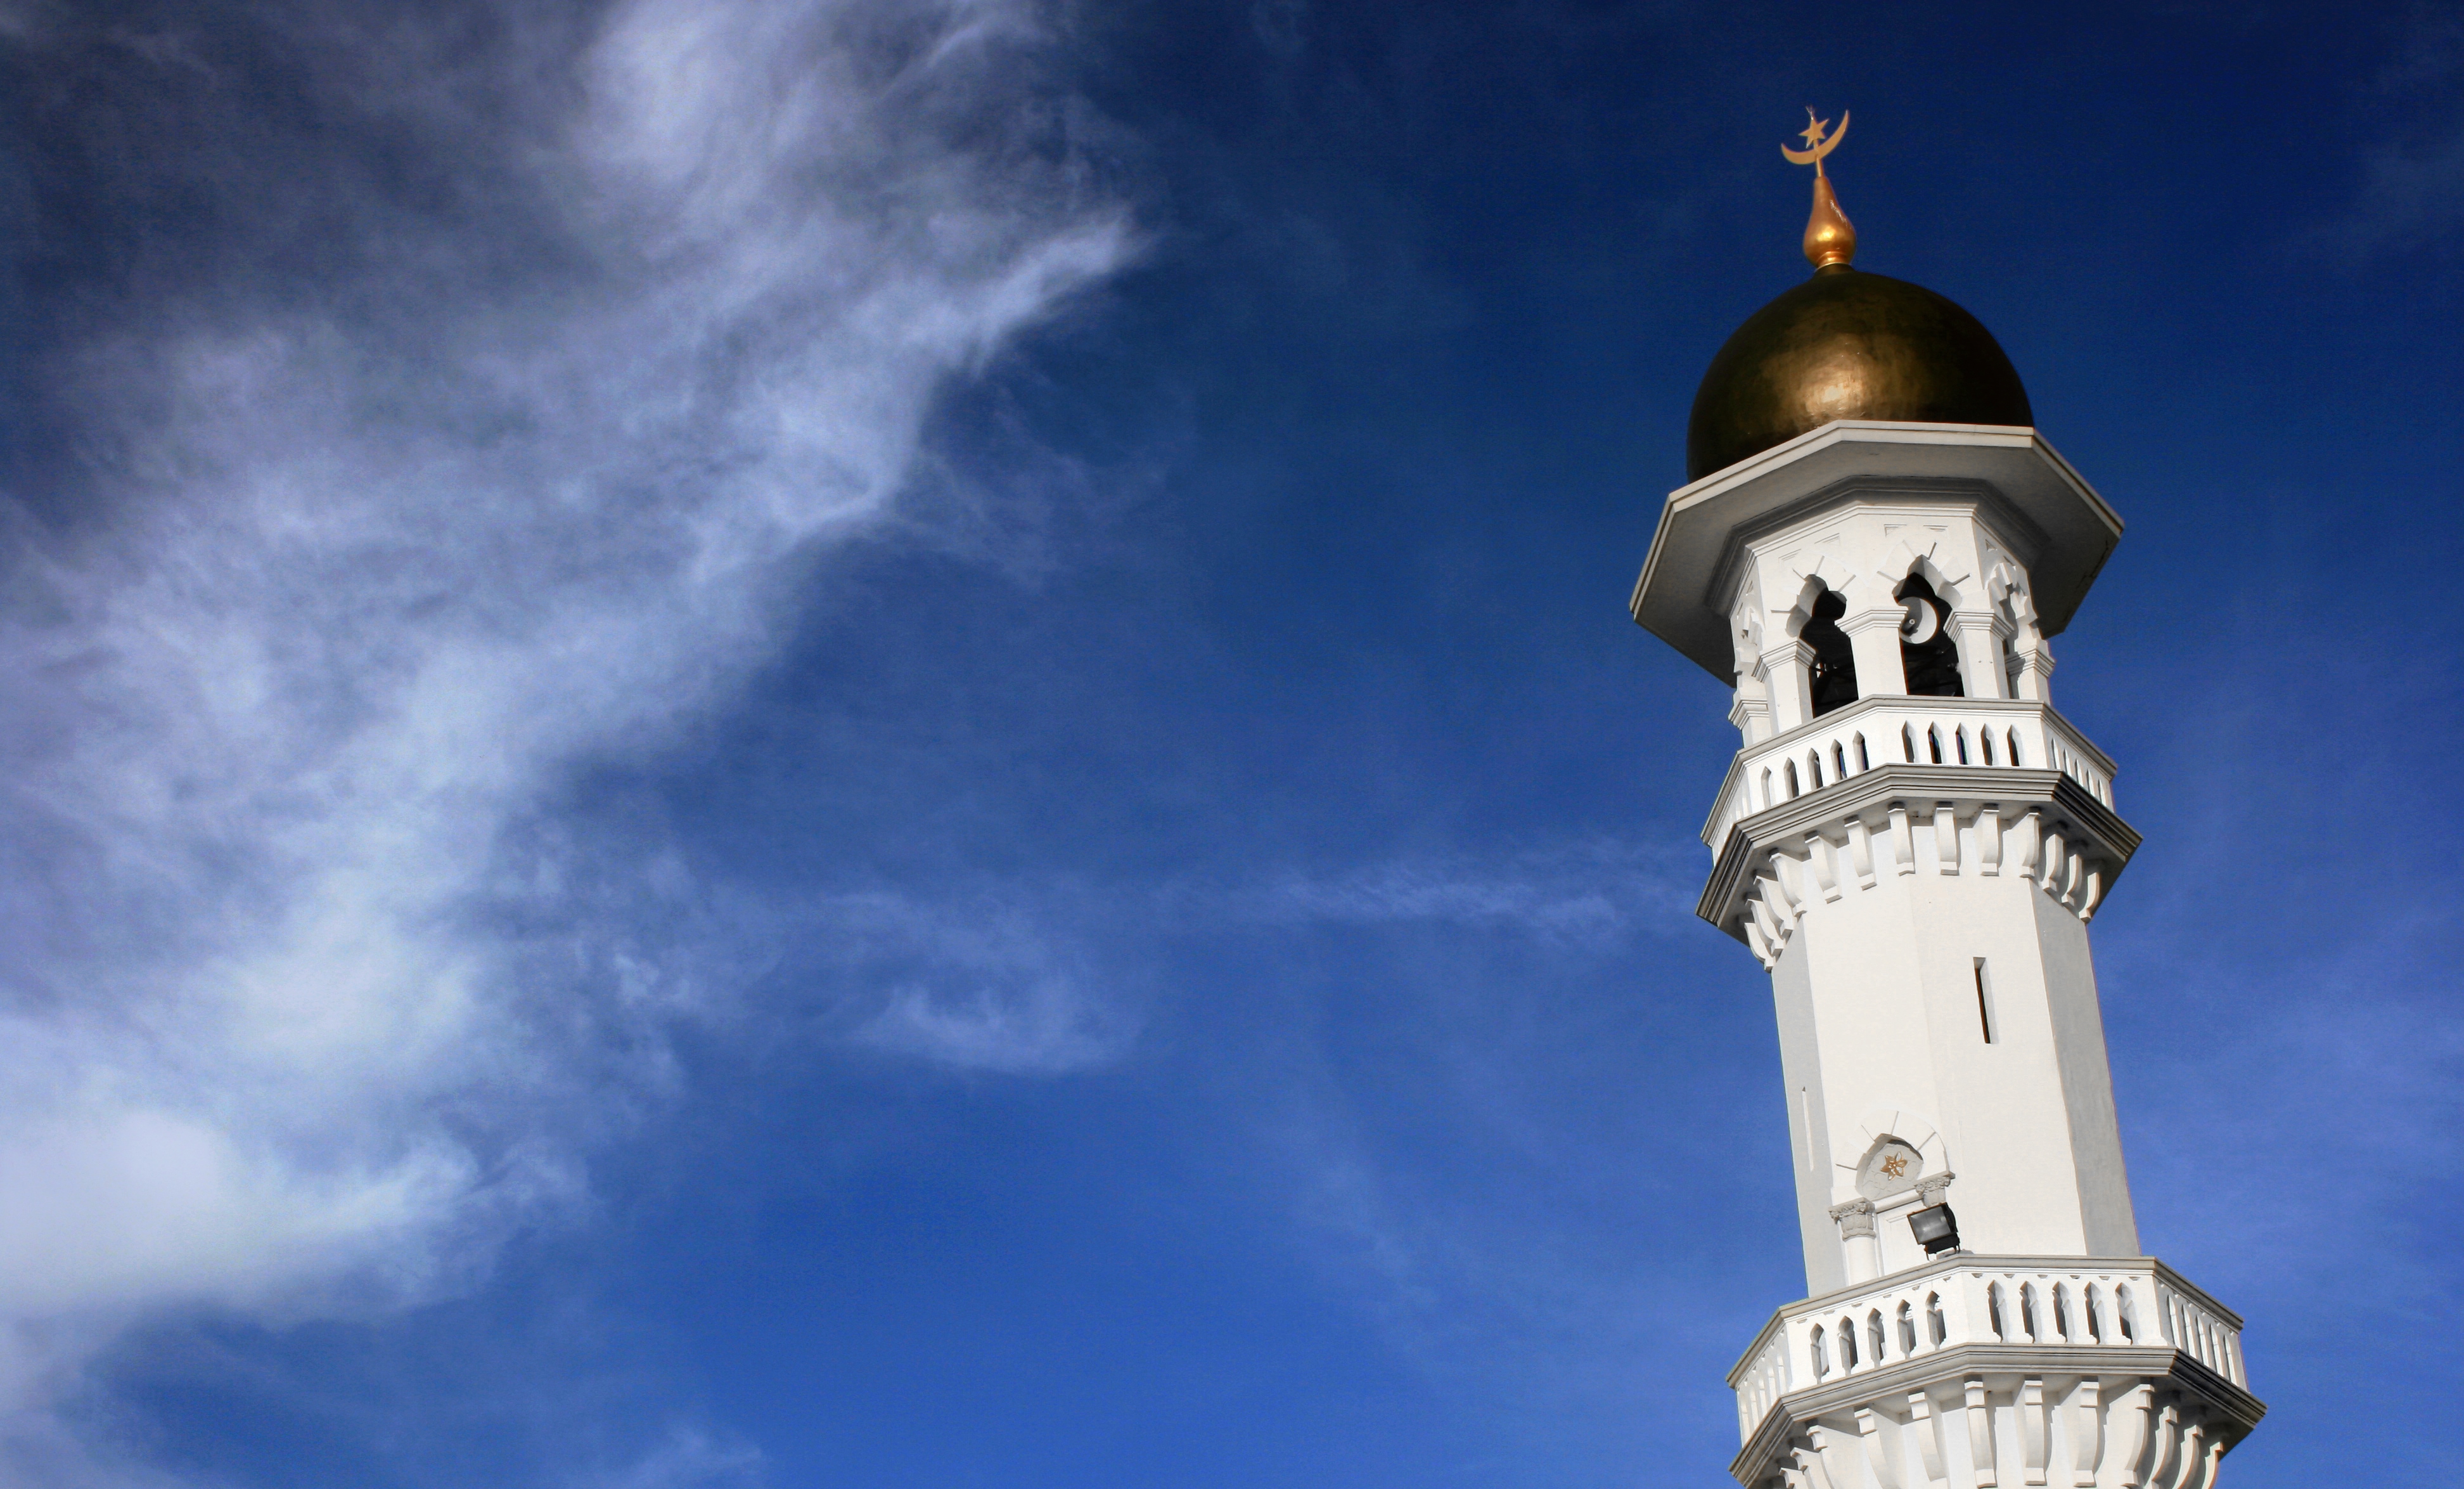 مآذن ومساجد حول العالم - عالمية الإسلام: المعالم الإسلامية...أناقة التاريخ